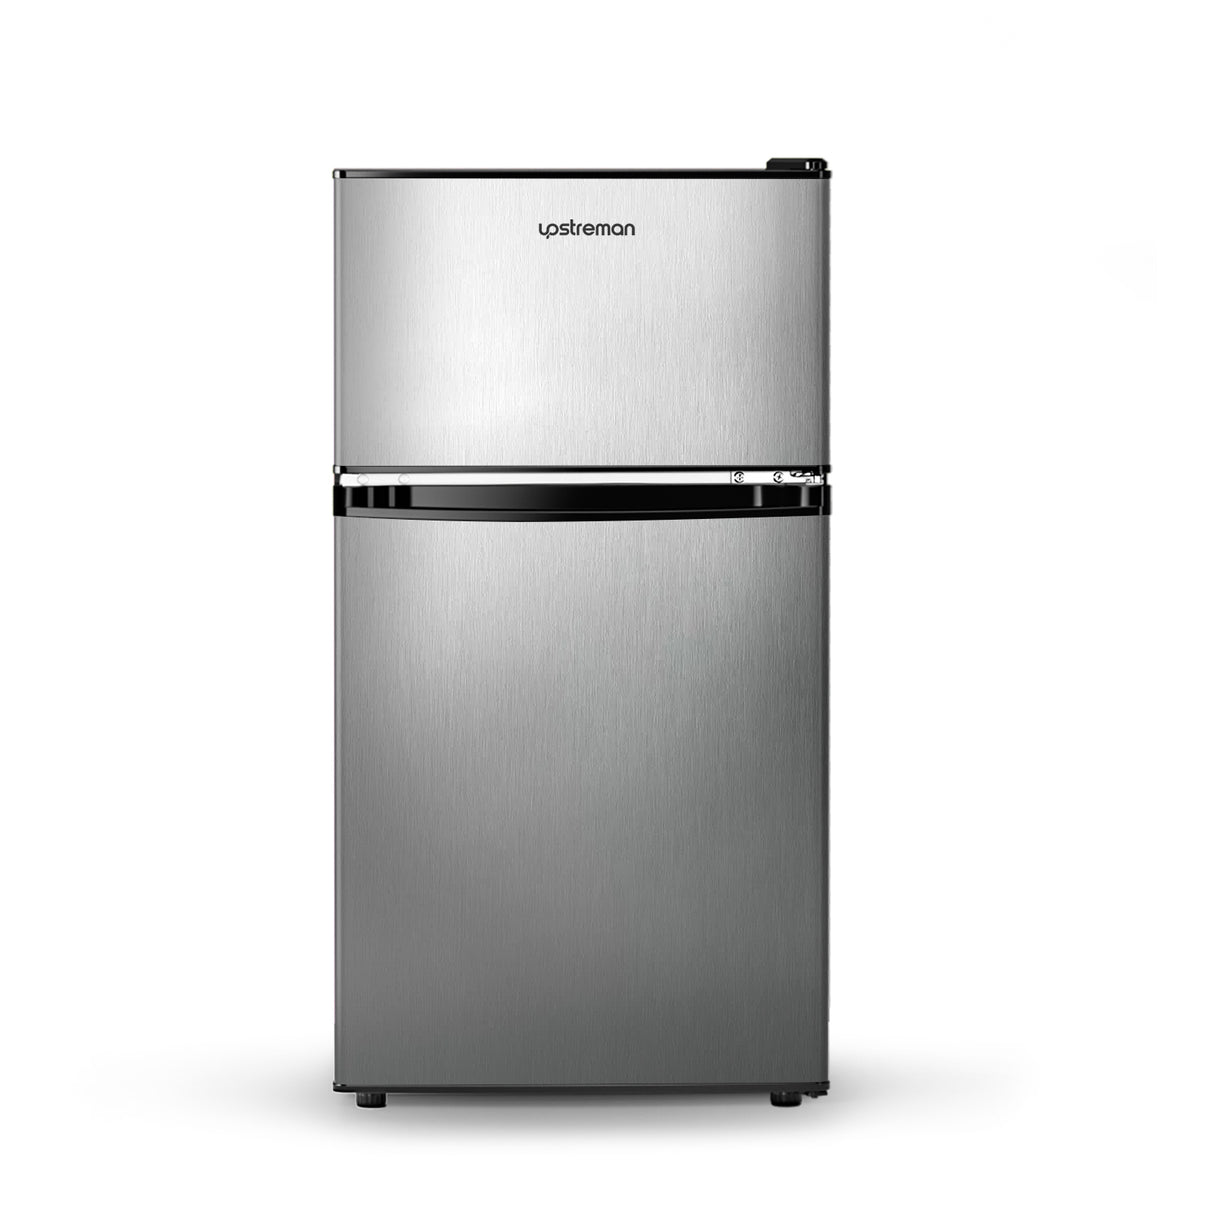 3.2 cu. ft. Mini Refrigerator with Freezer, Reversible 2 Door